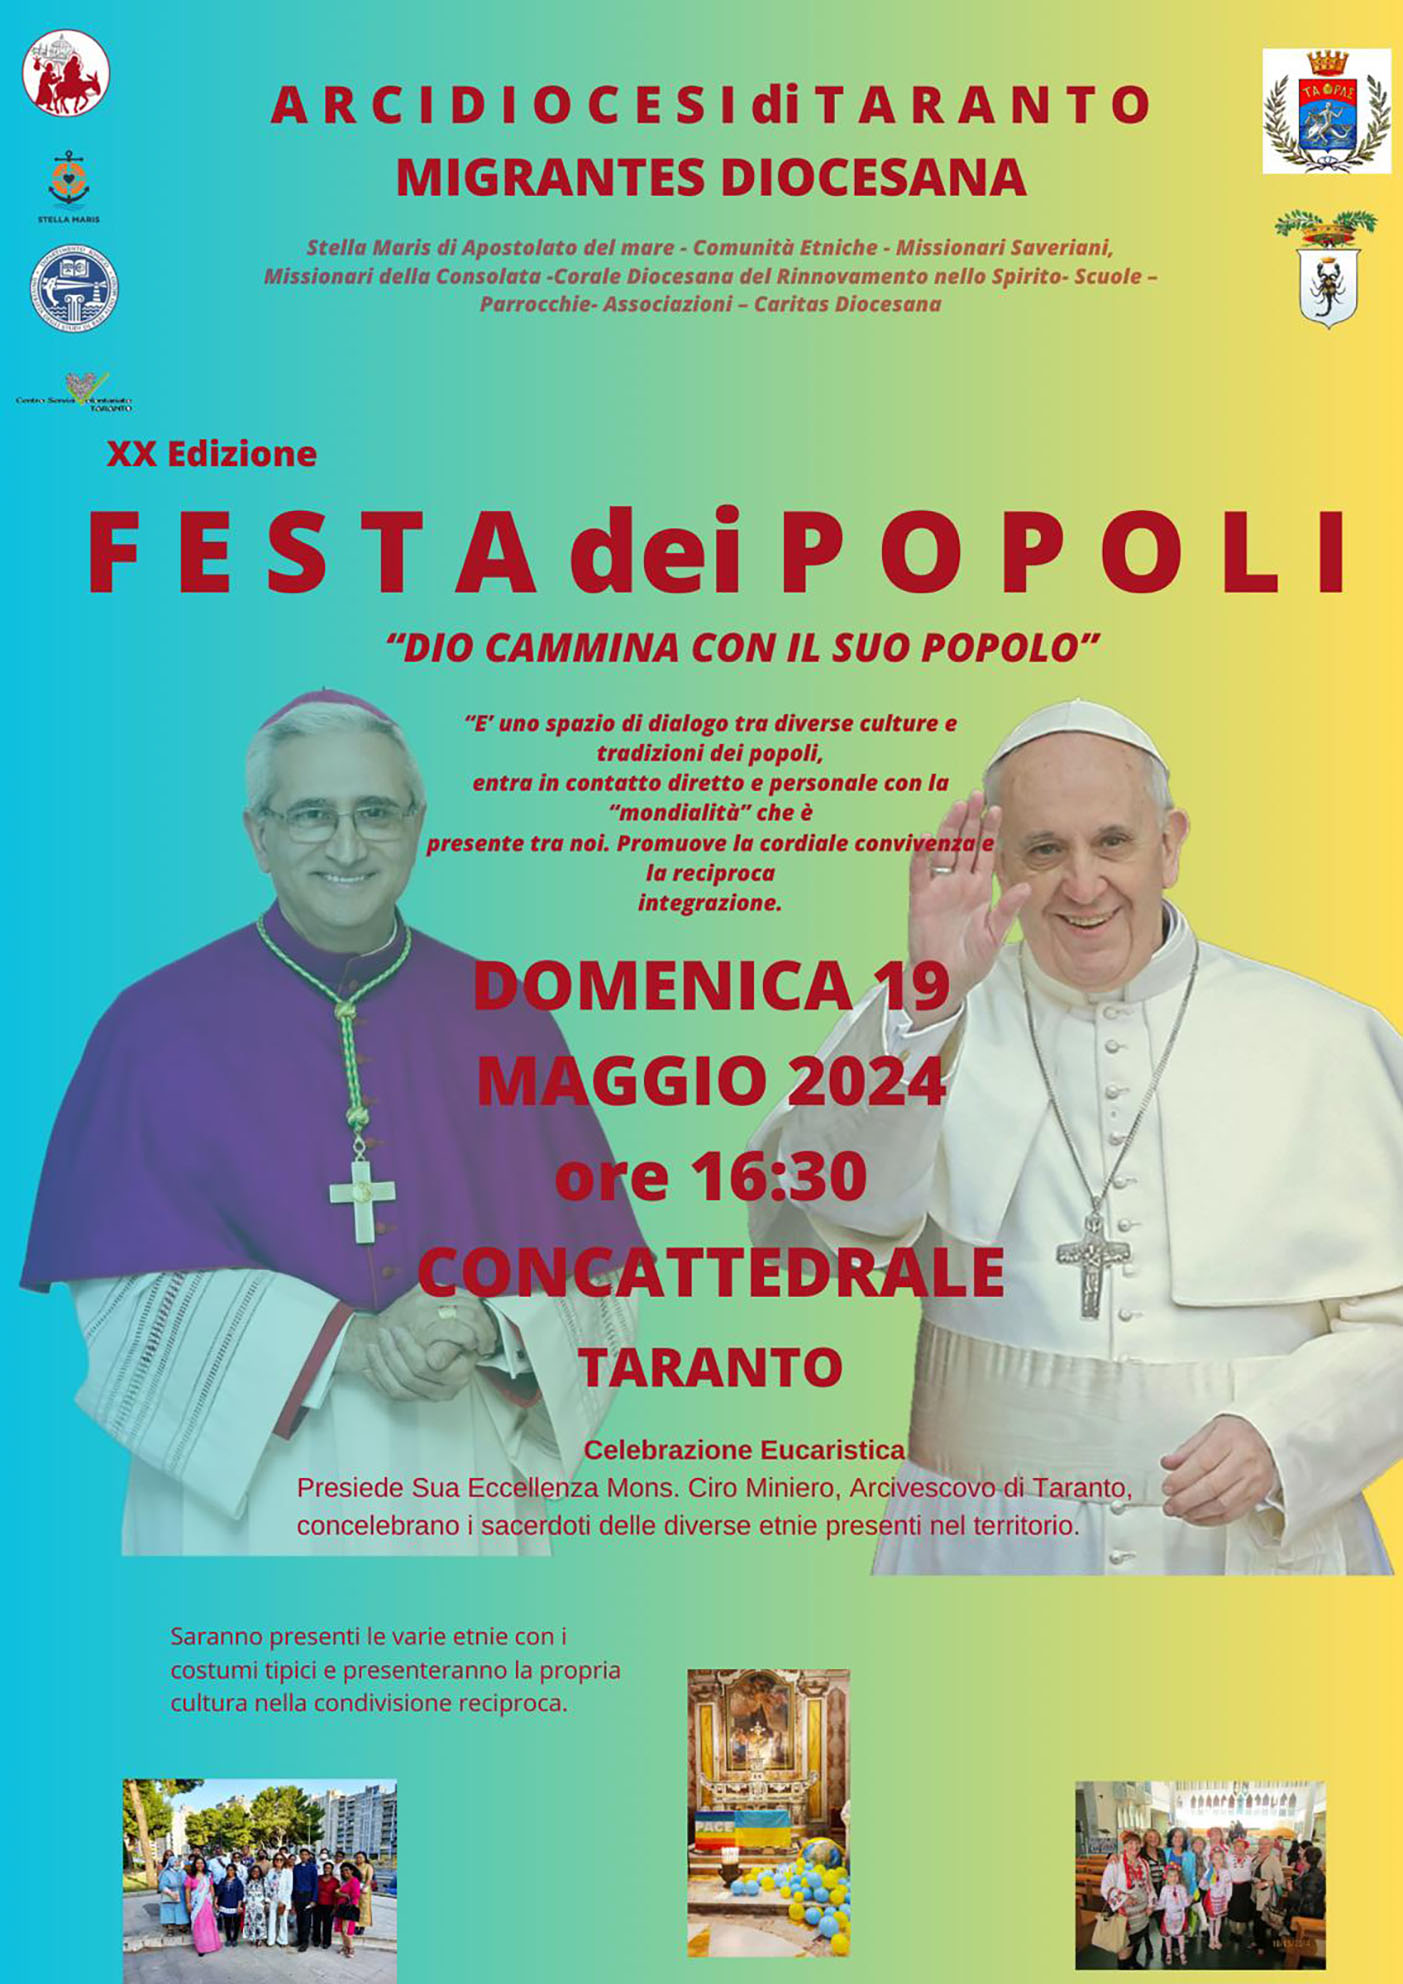 Migrantes: a Taranto la Festa dei Popoli diocesana 2024